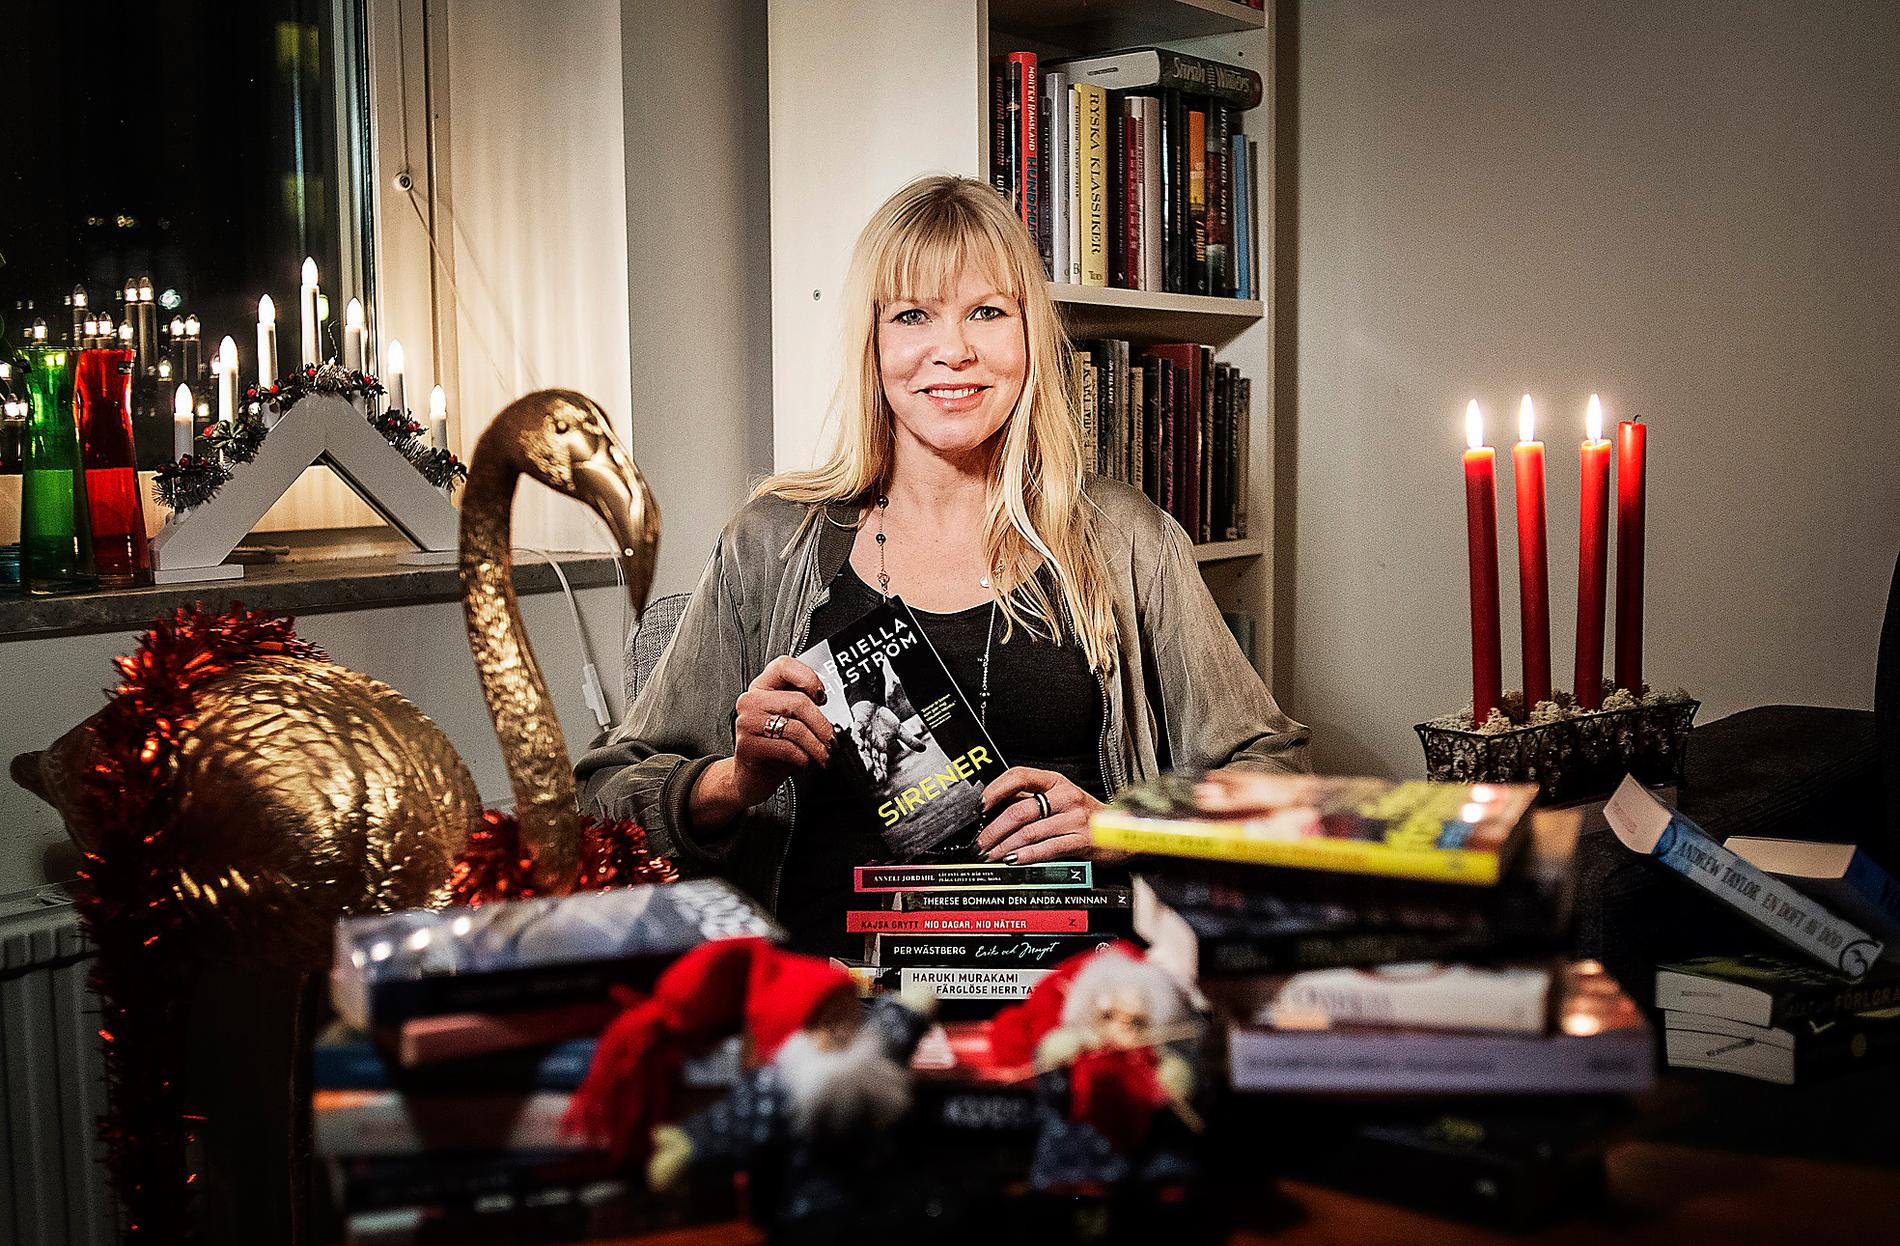 Alla vill väl ha minst en pocketbok i julklapp? Aftonbladets Cecilia Gustavsson tipsar om tio olika.
Foto: Robin Allard